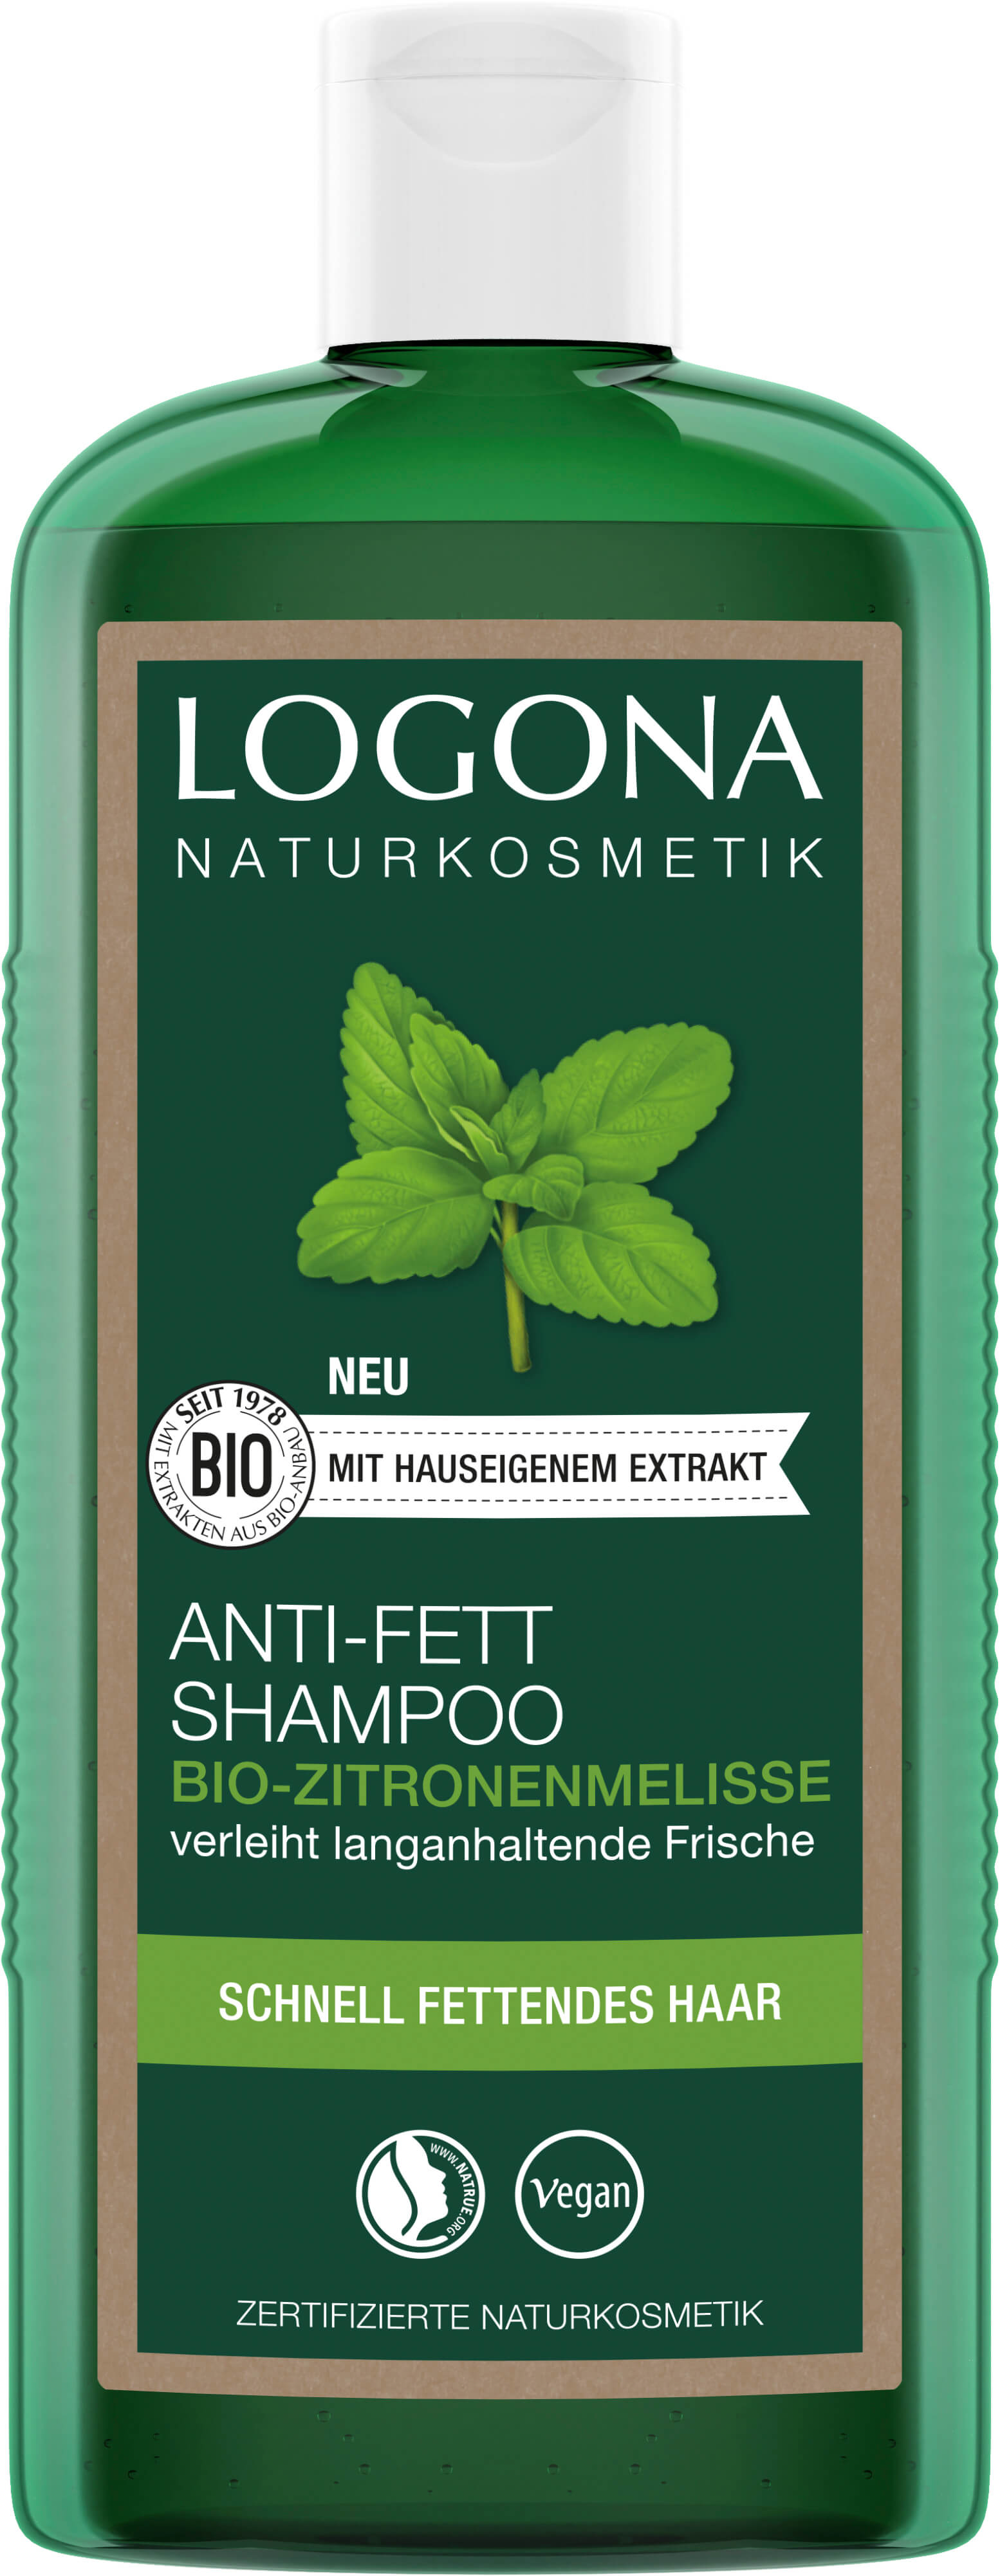 Anti-Fett Bio-Zitronenmelisse | LOGONA Naturkosmetik